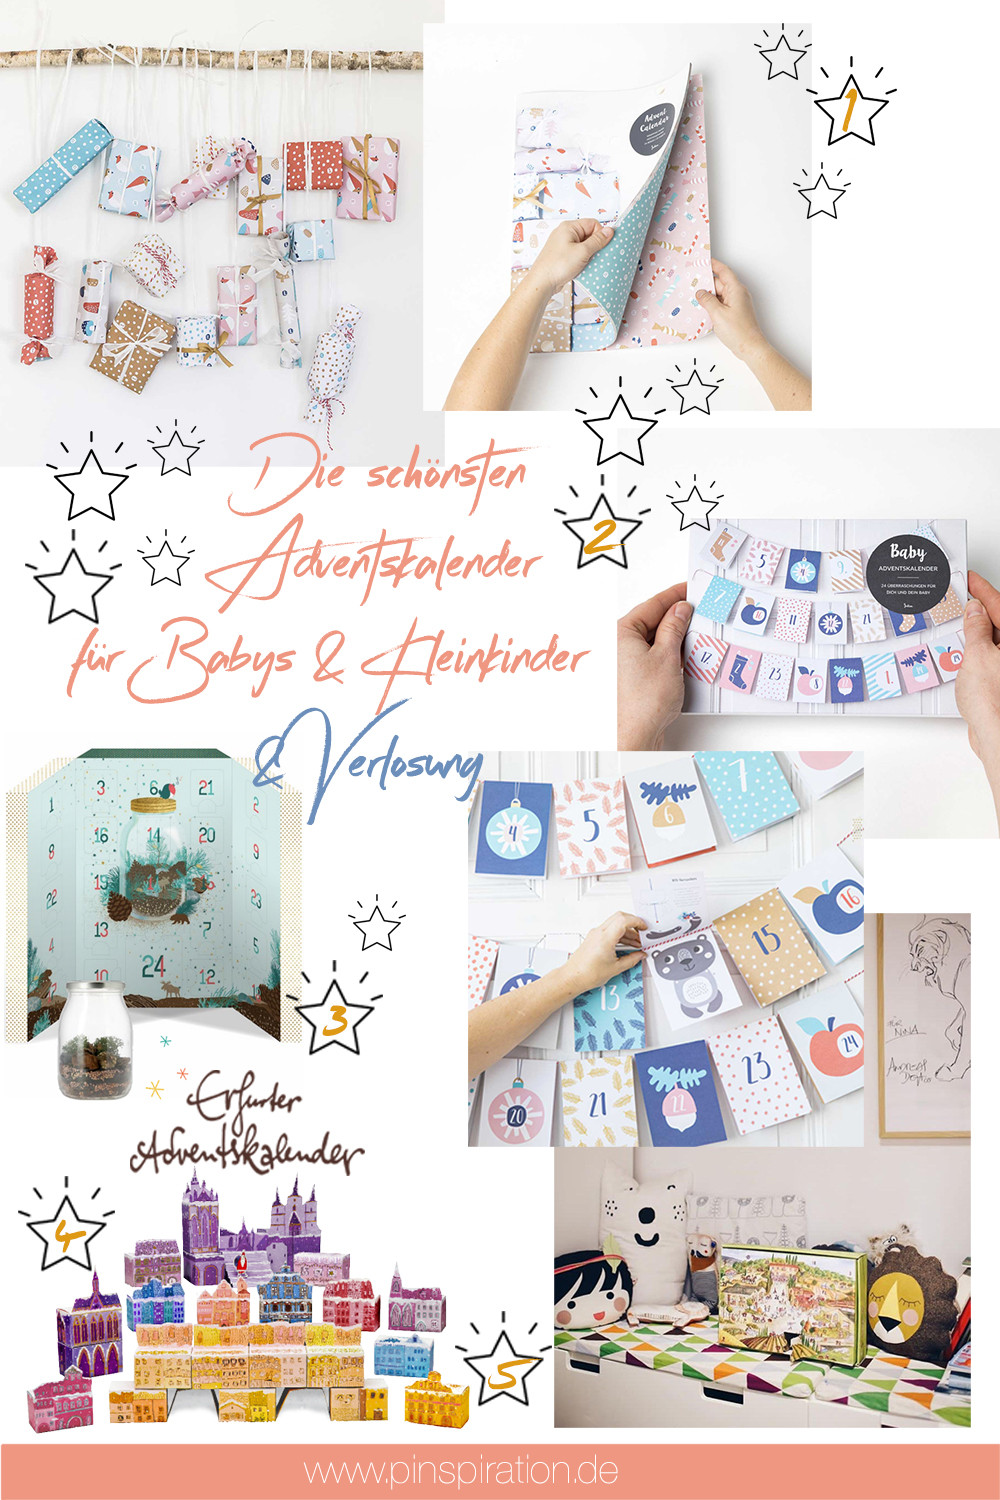 Adventskalender Geschenkideen
 Die schönsten Adventskalender & Geschenkideen für Babys